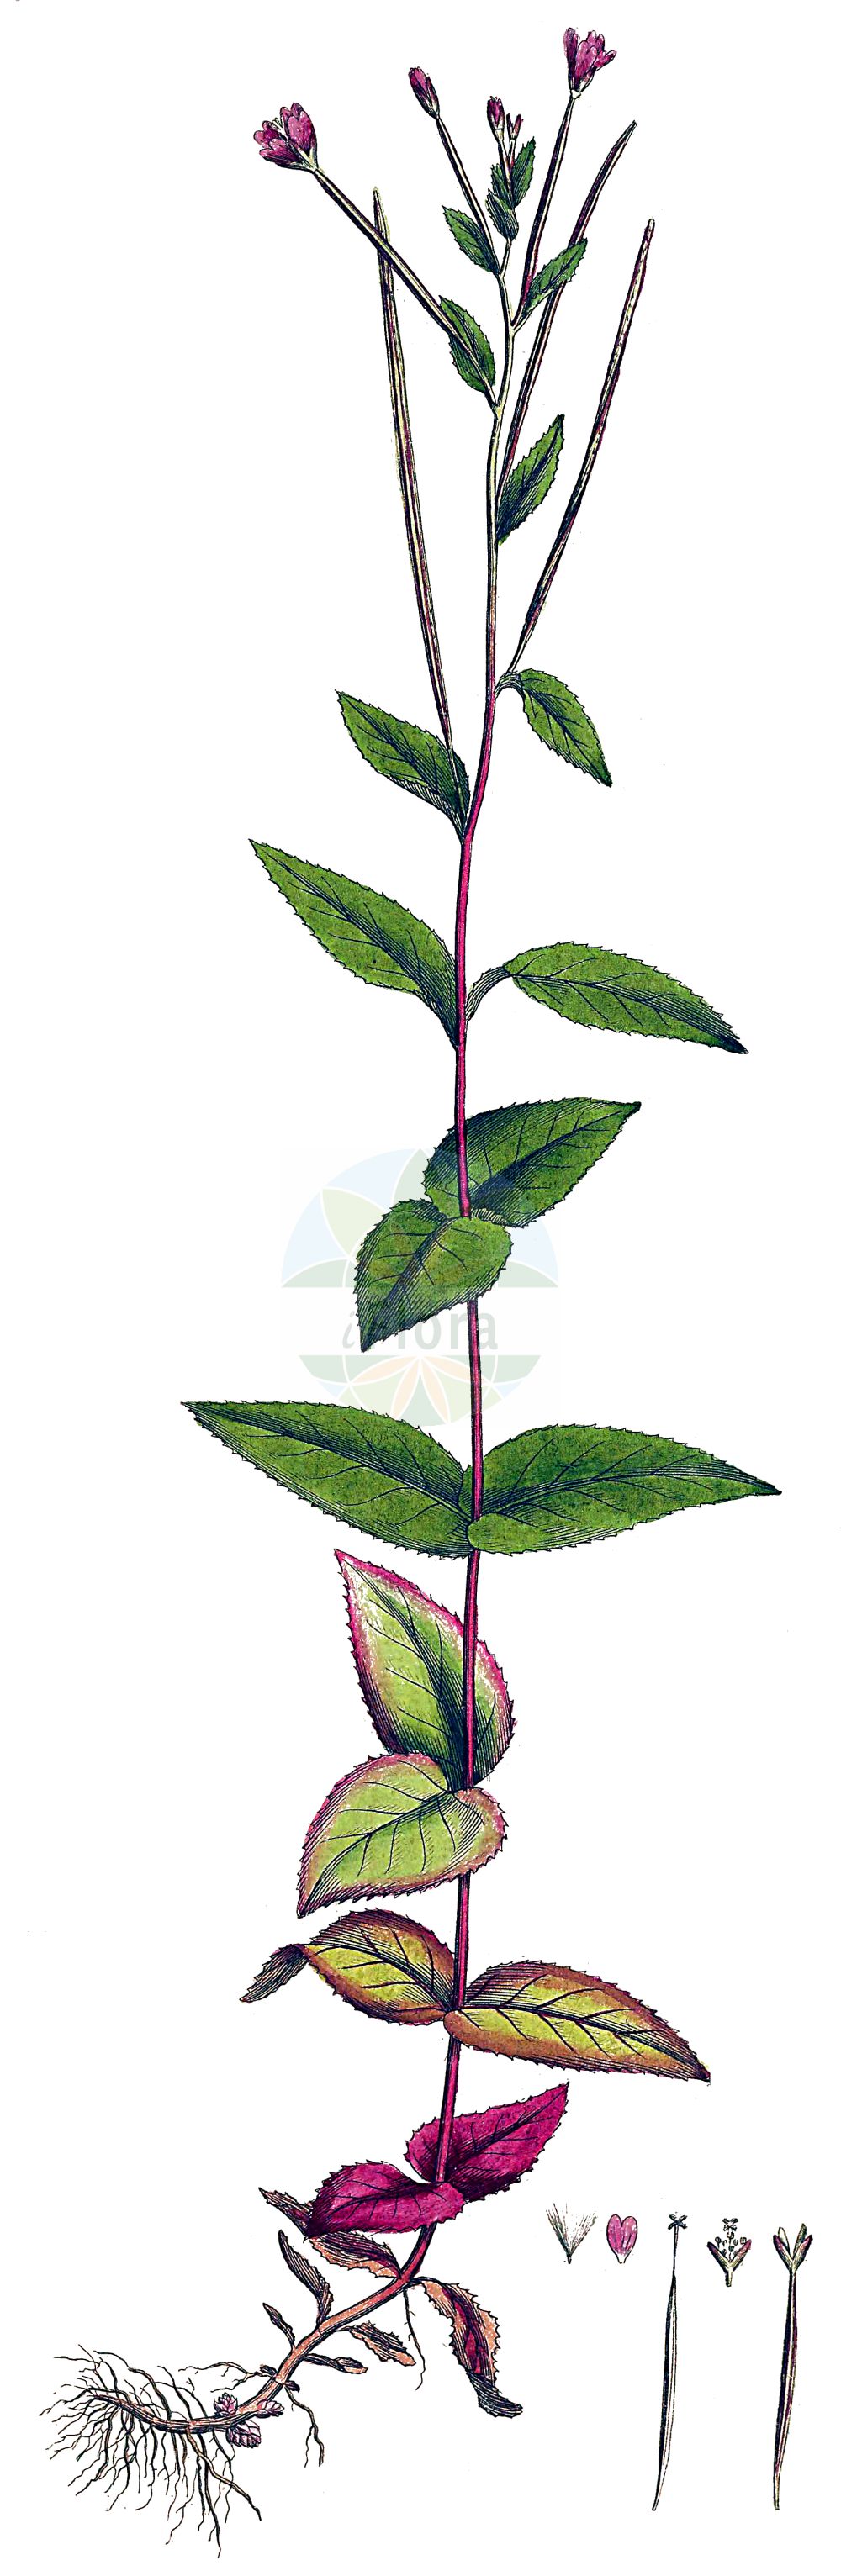 Historische Abbildung von Epilobium montanum (Berg-Weidenröschen - Broad-leaved Willowherb). Das Bild zeigt Blatt, Bluete, Frucht und Same. ---- Historical Drawing of Epilobium montanum (Berg-Weidenröschen - Broad-leaved Willowherb). The image is showing leaf, flower, fruit and seed.(Epilobium montanum,Berg-Weidenröschen,Broad-leaved Willowherb,Epilobium hypericifolium,Epilobium montanum,Berg-Weidenroeschen,Broad-leaved Willowherb,Epilobium,Weidenröschen,Willowherb,Onagraceae,Nachtkerzengewächse,Evening Primrose family,Blatt,Bluete,Frucht,Same,leaf,flower,fruit,seed,Curtis (1777-1798))